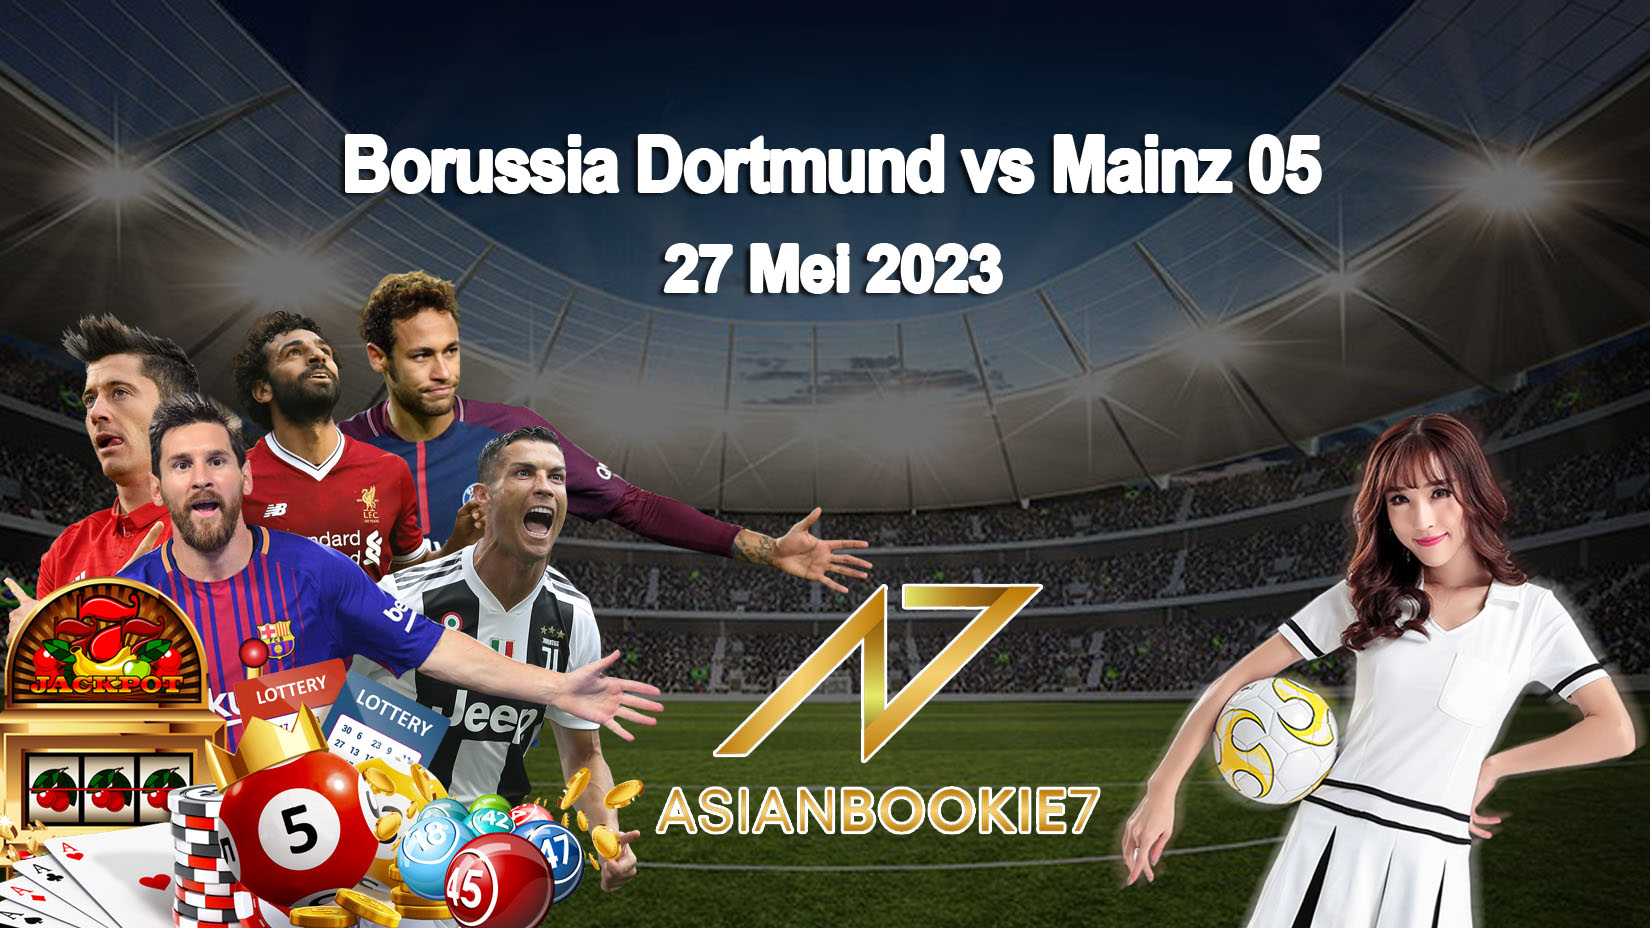 Prediksi Borussia Dortmund vs Mainz 05 27 Mei 2023